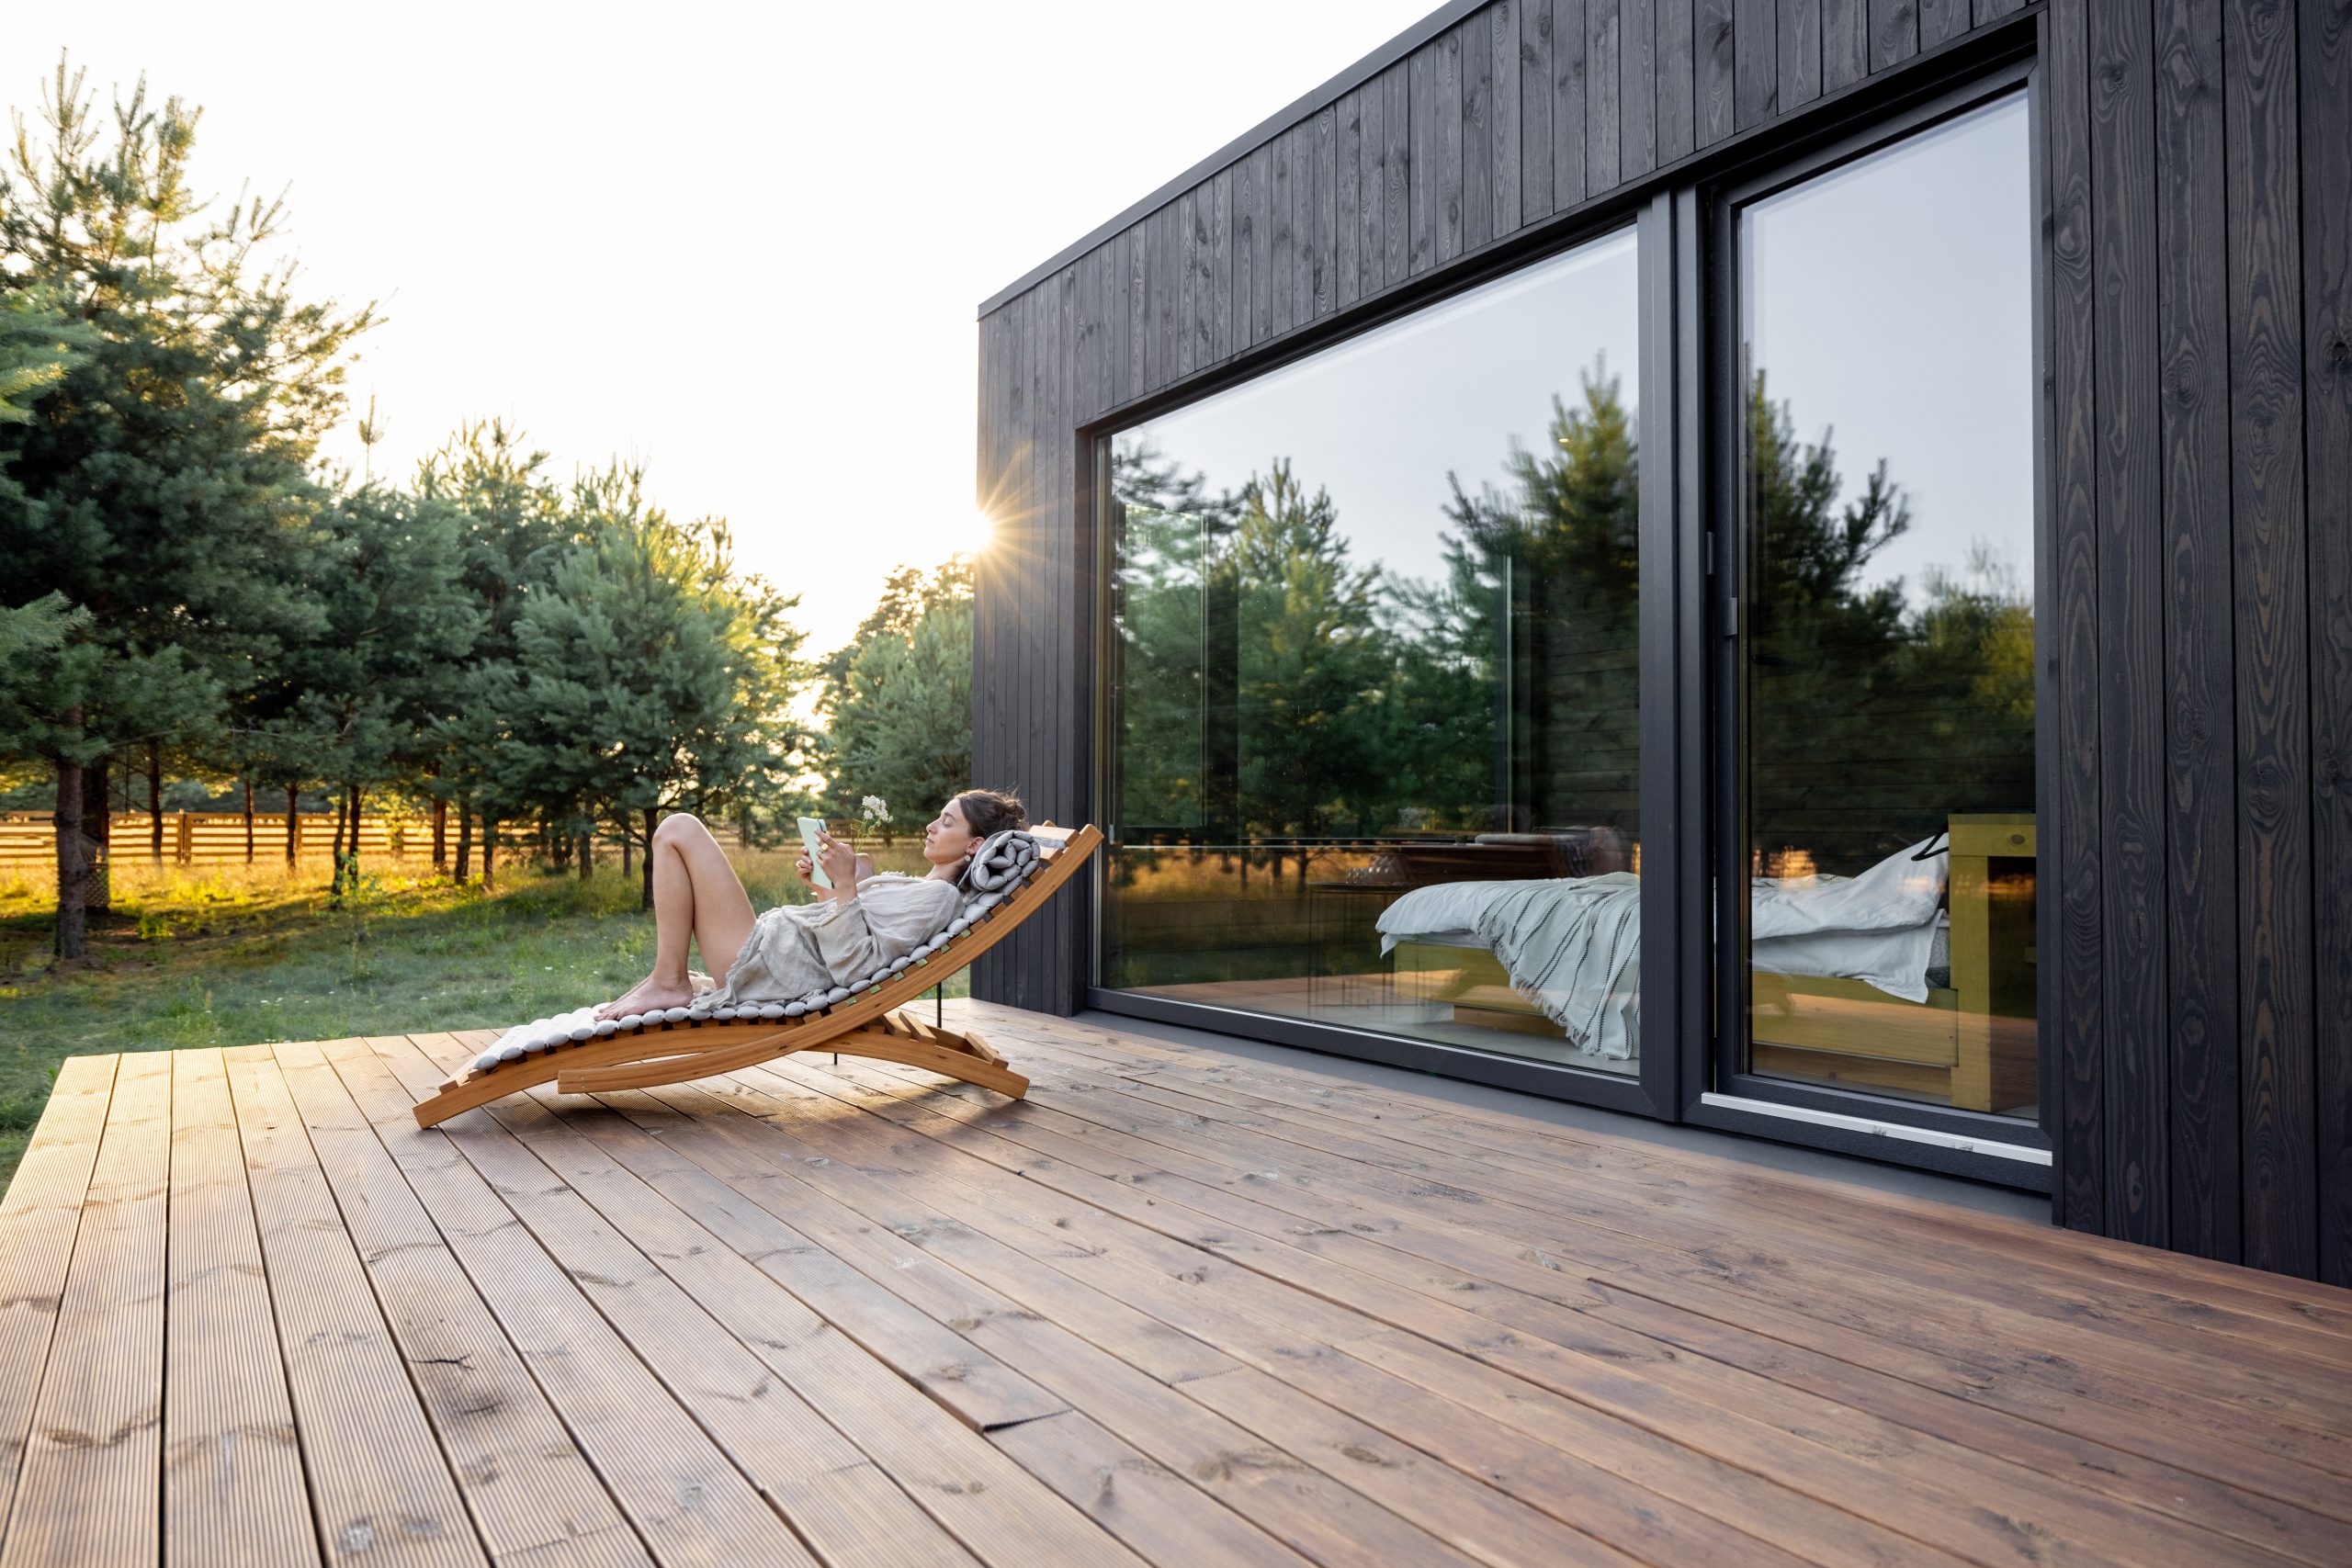 Eine Frau entspannt sich in einem modernen Garten auf einer Holzterrasse eines zeitgemäßen schwarzen Hauses, während sie auf einem stilvollen Liegestuhl in der Sonne liest. Der Hintergrund zeigt eine ruhige Umgebung mit Bäumen und einem grünen Feld, was die harmonische Integration von Architektur und Natur betont.